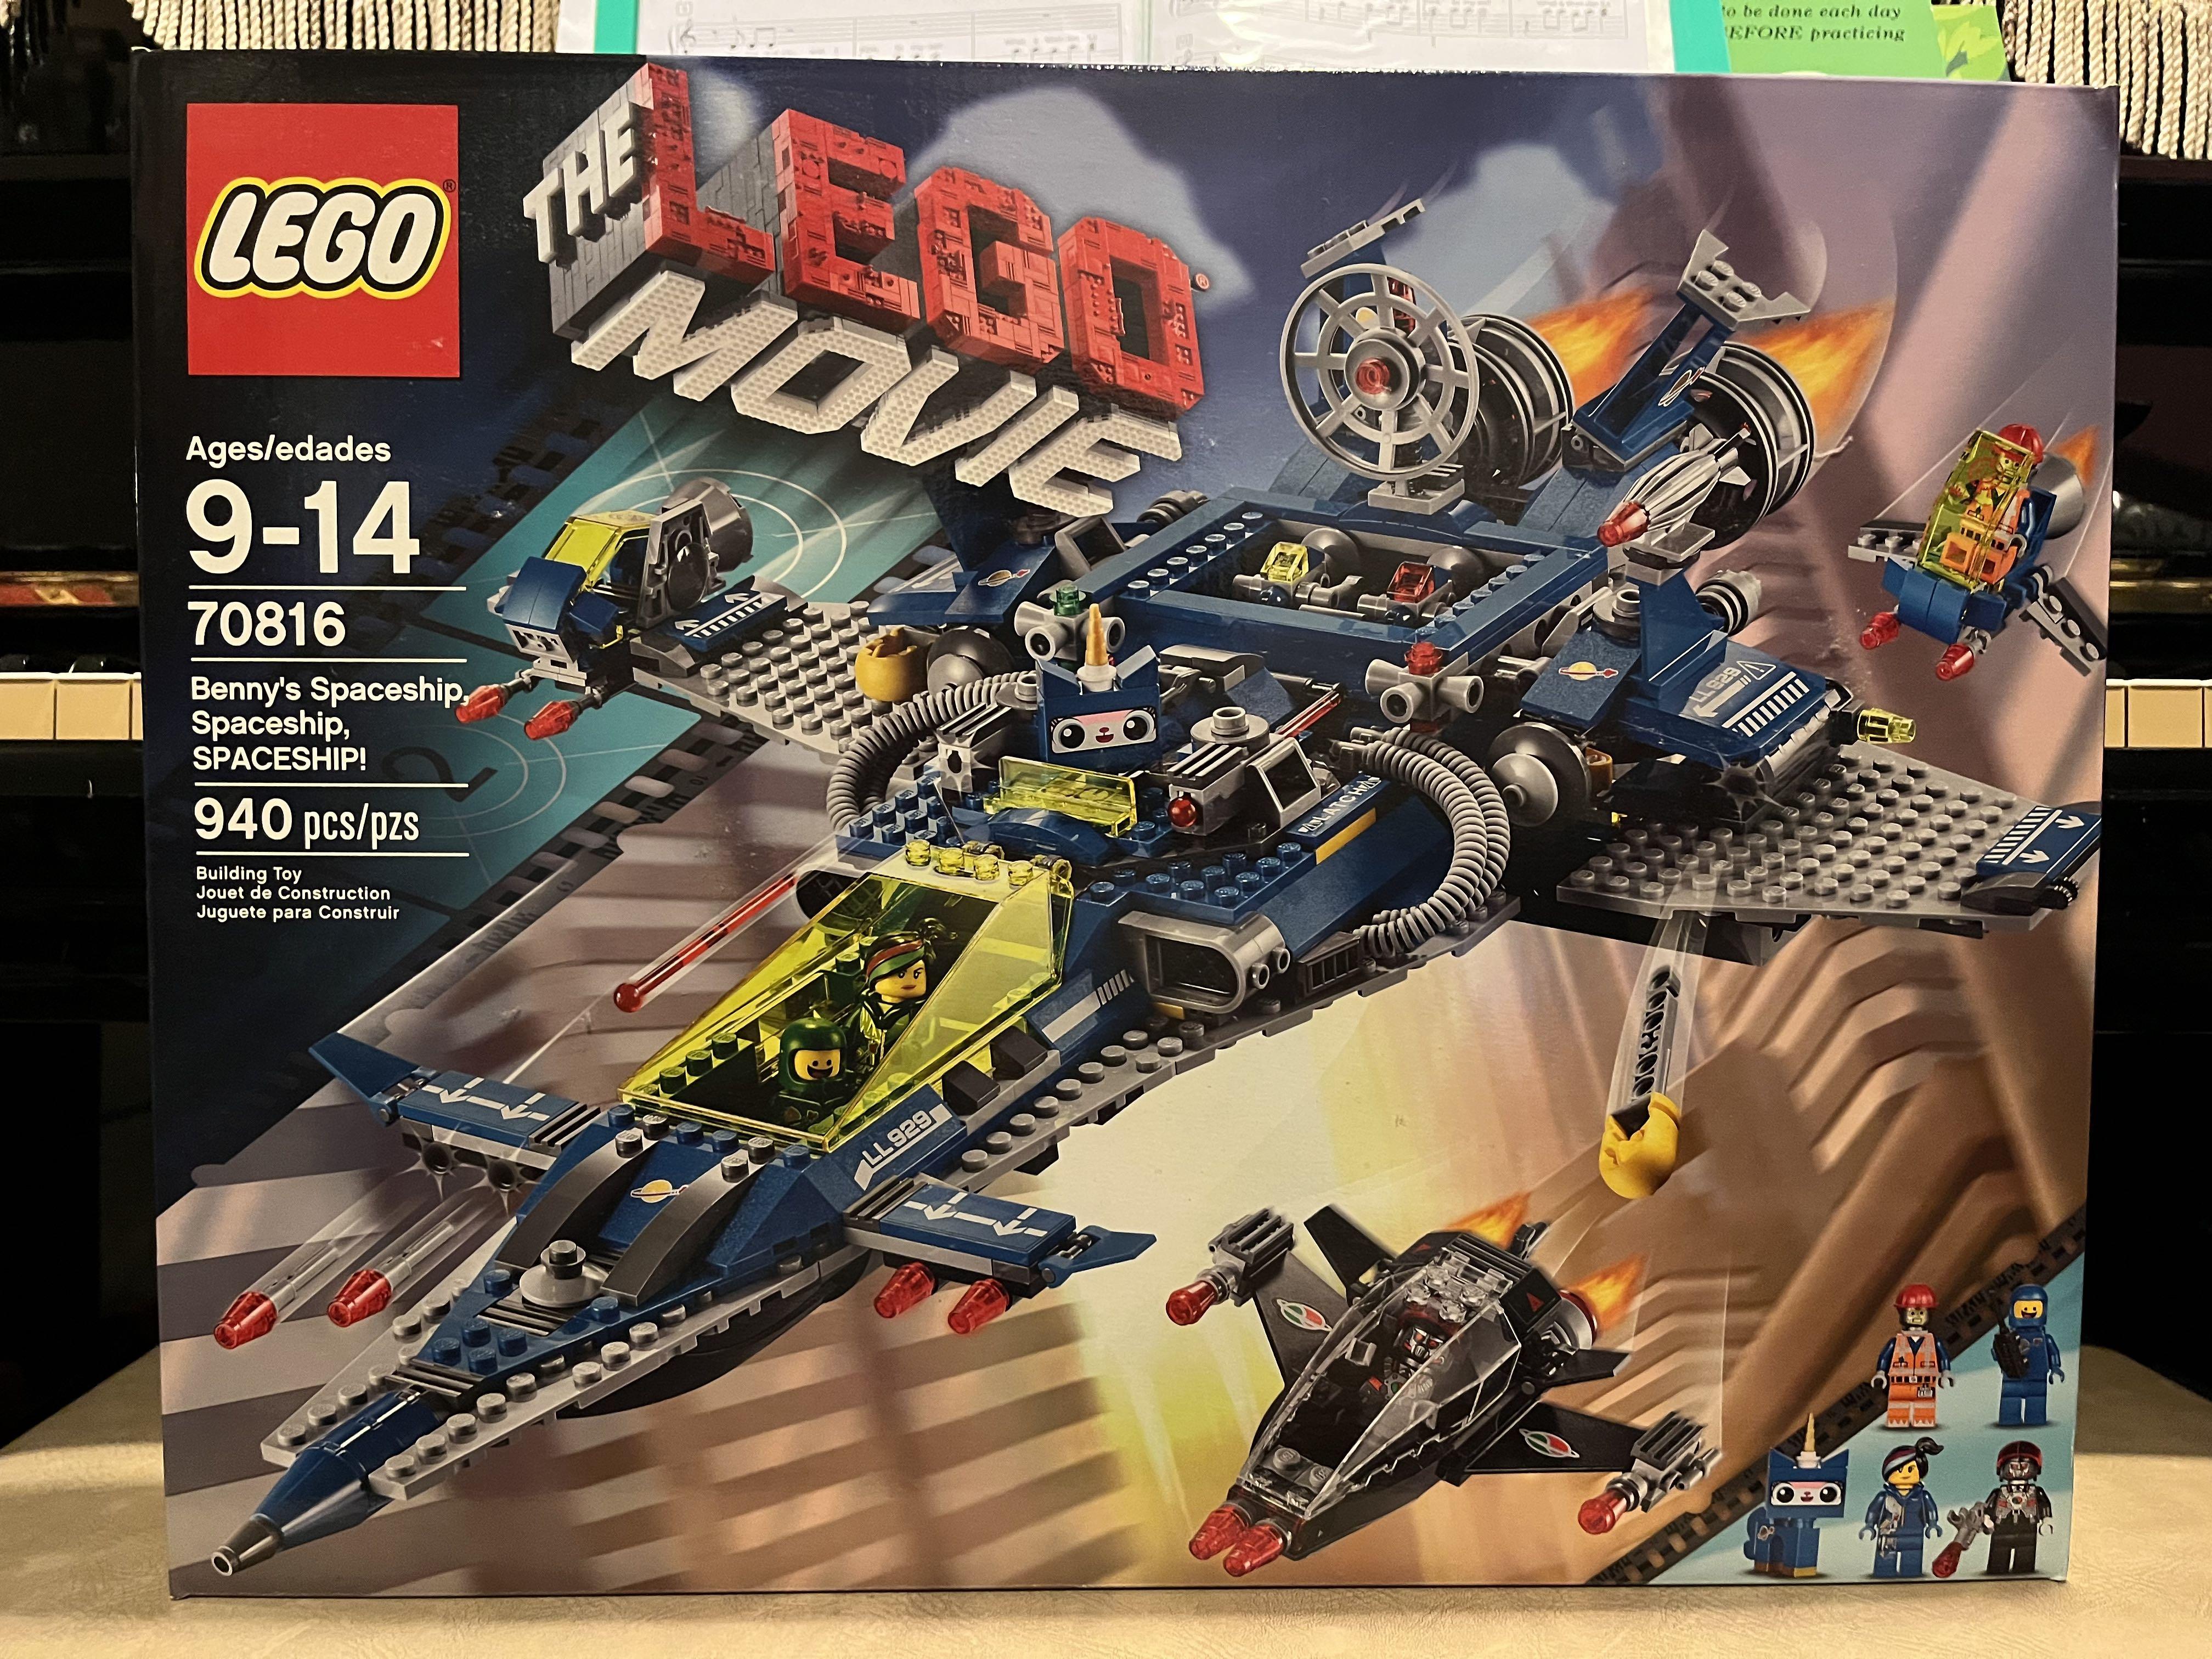 BNIB Lego Movie Benny's Spaceship 70816, Hobbies & Toys, Toys & Games on  Carousell